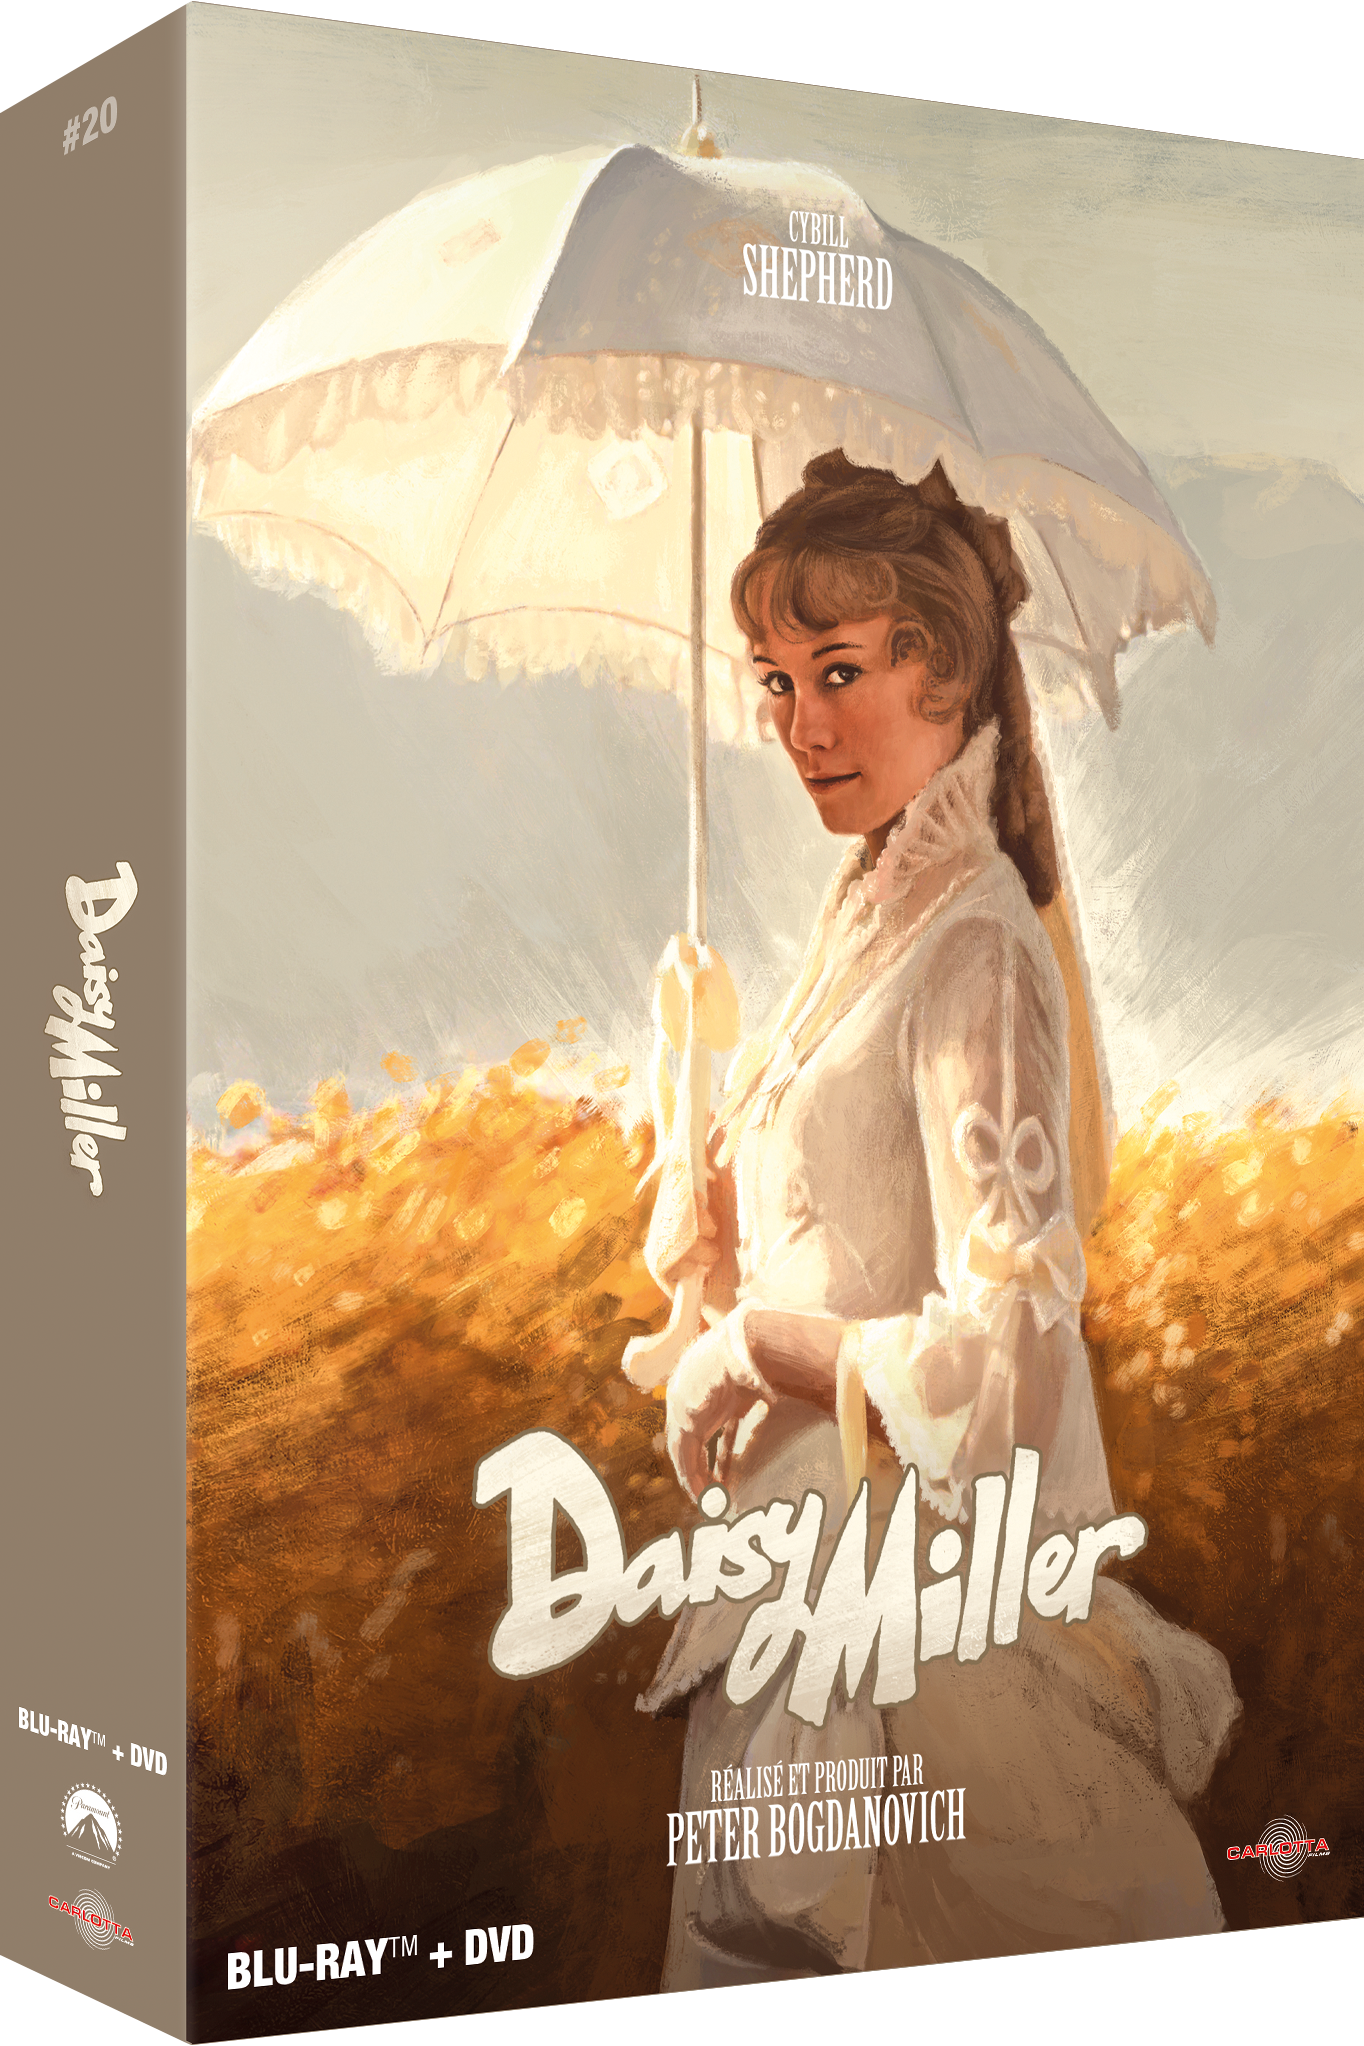 Daisy Miller - Prestige Limited Edition Combo Blu-ray + DVD + Memorabilia